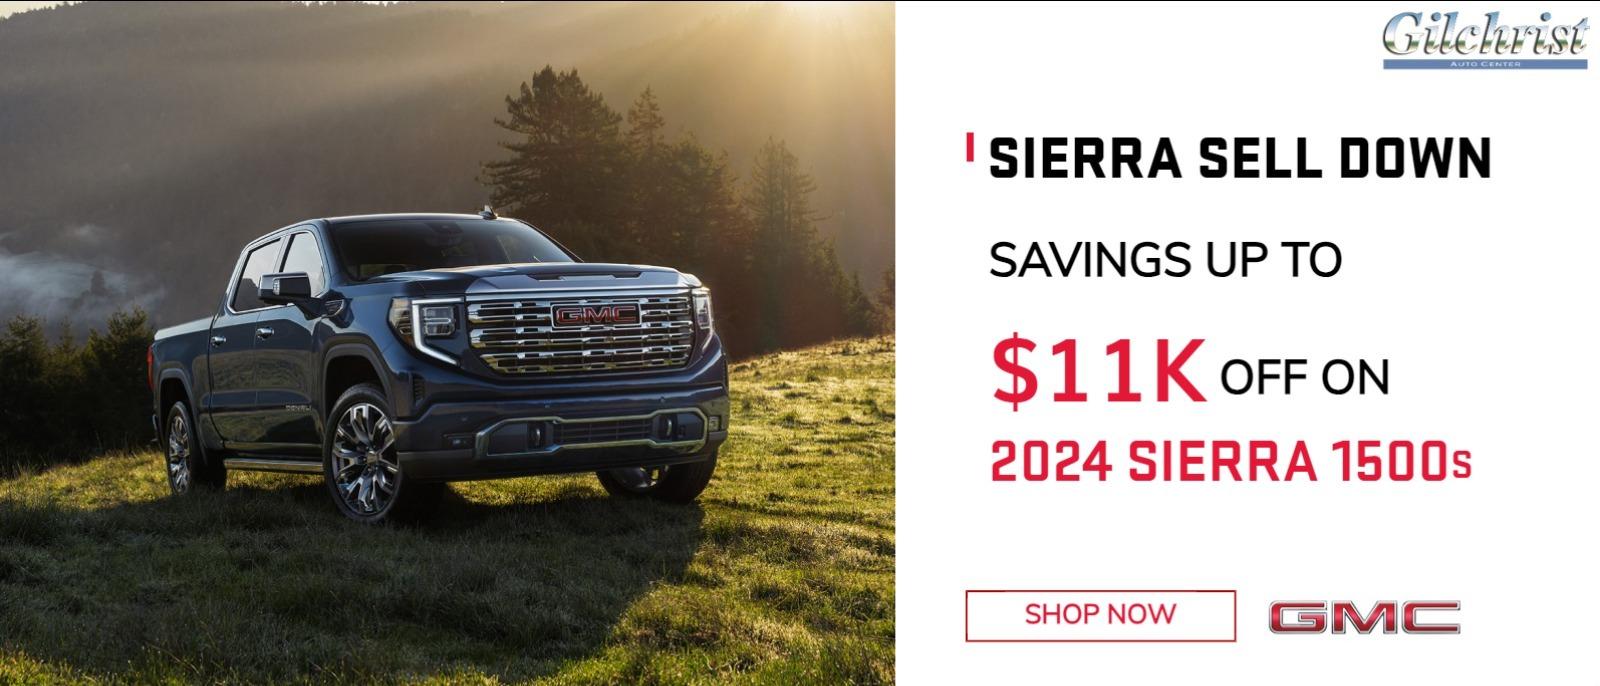 Sierra Sell DOWN
"Savings up to $11k off on 2024 Sierra 1500s"